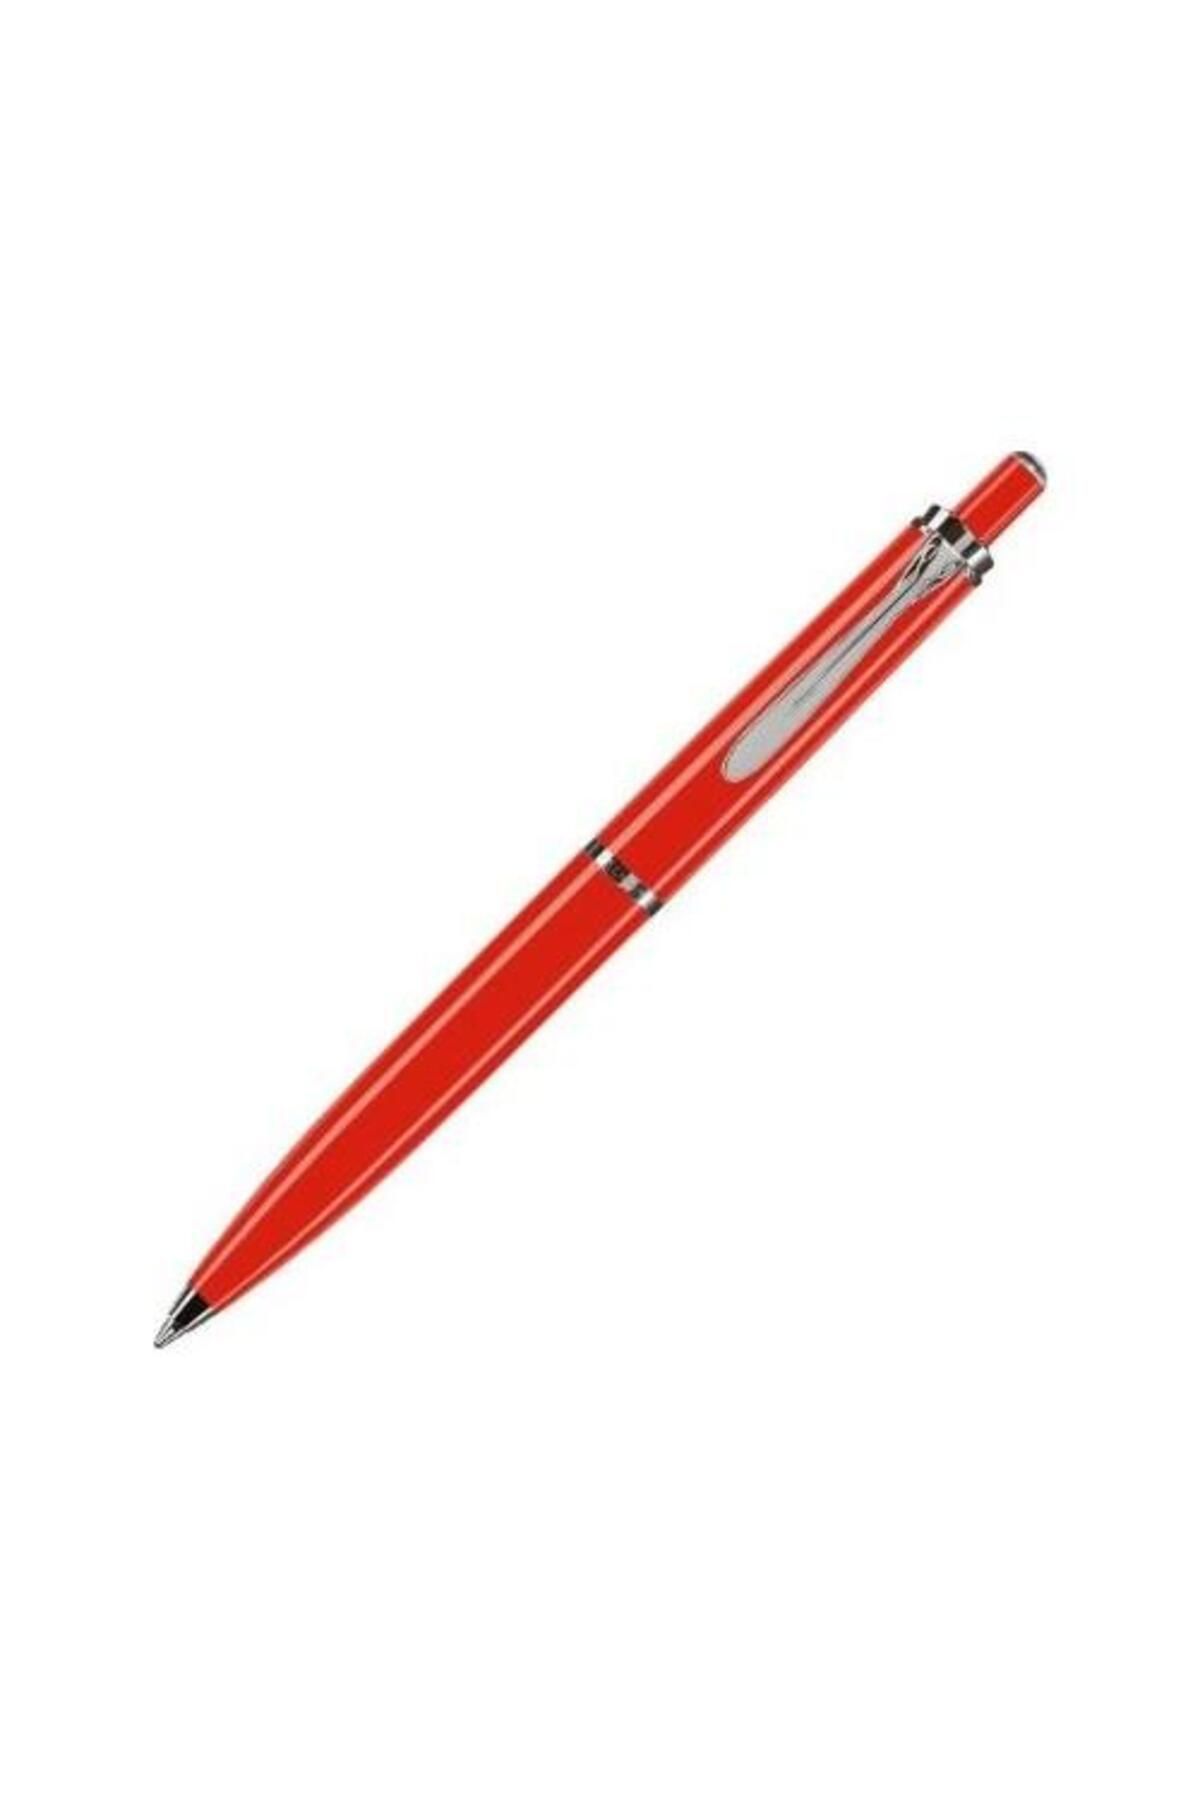 Pelikan Tükenmez Kalem Kırmızı K205